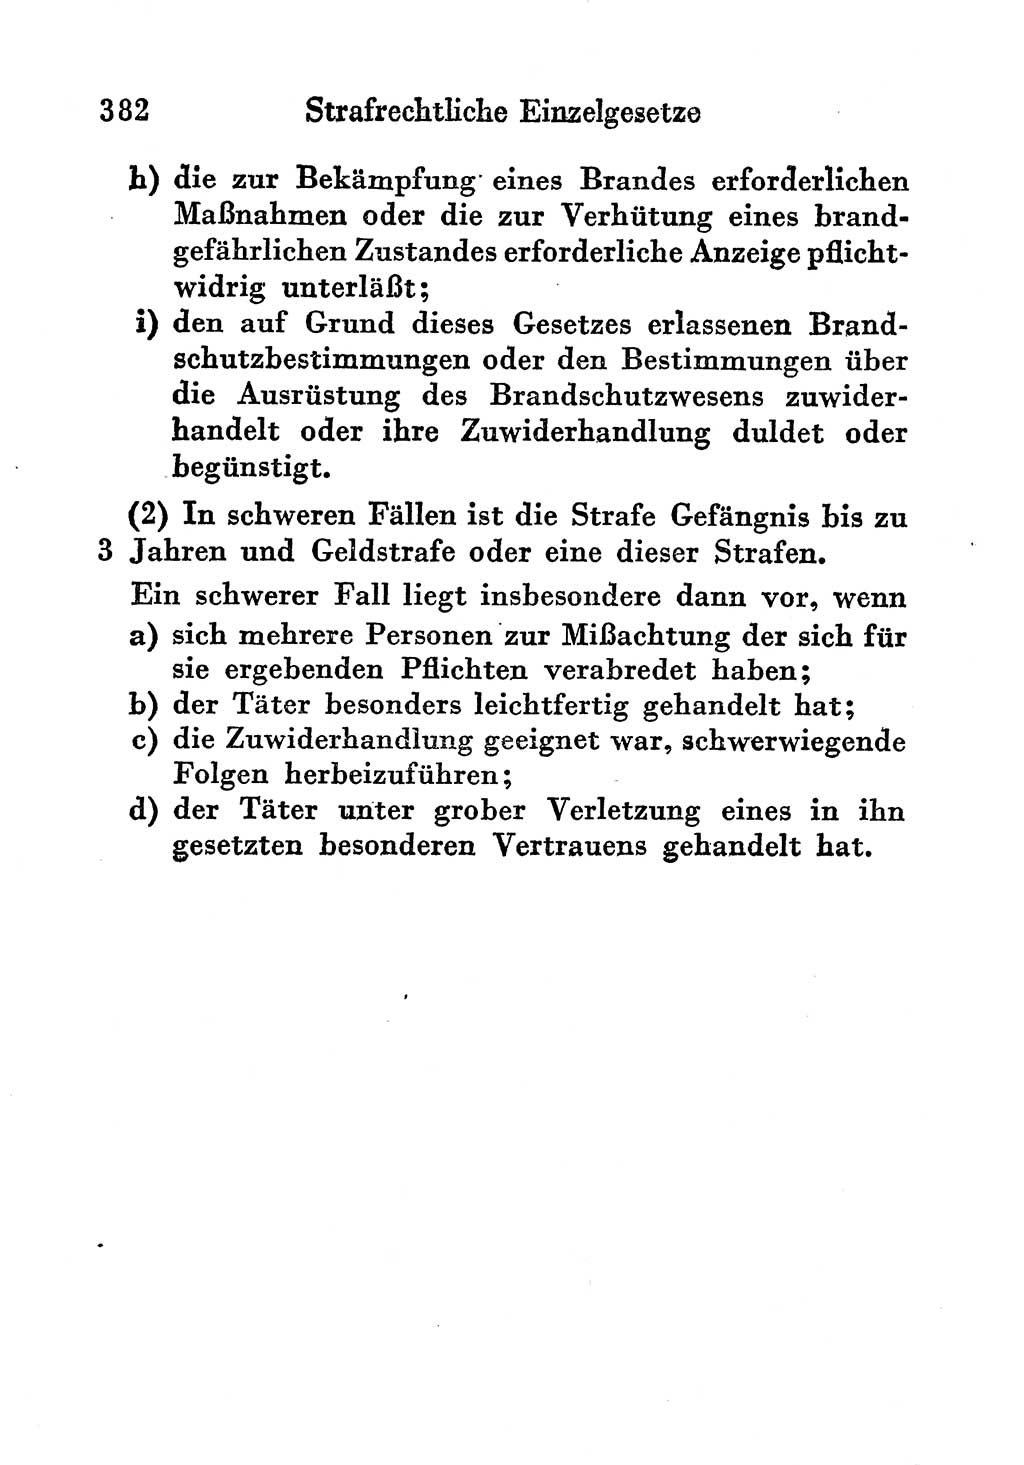 Strafgesetzbuch (StGB) und andere Strafgesetze [Deutsche Demokratische Republik (DDR)] 1956, Seite 382 (StGB Strafges. DDR 1956, S. 382)